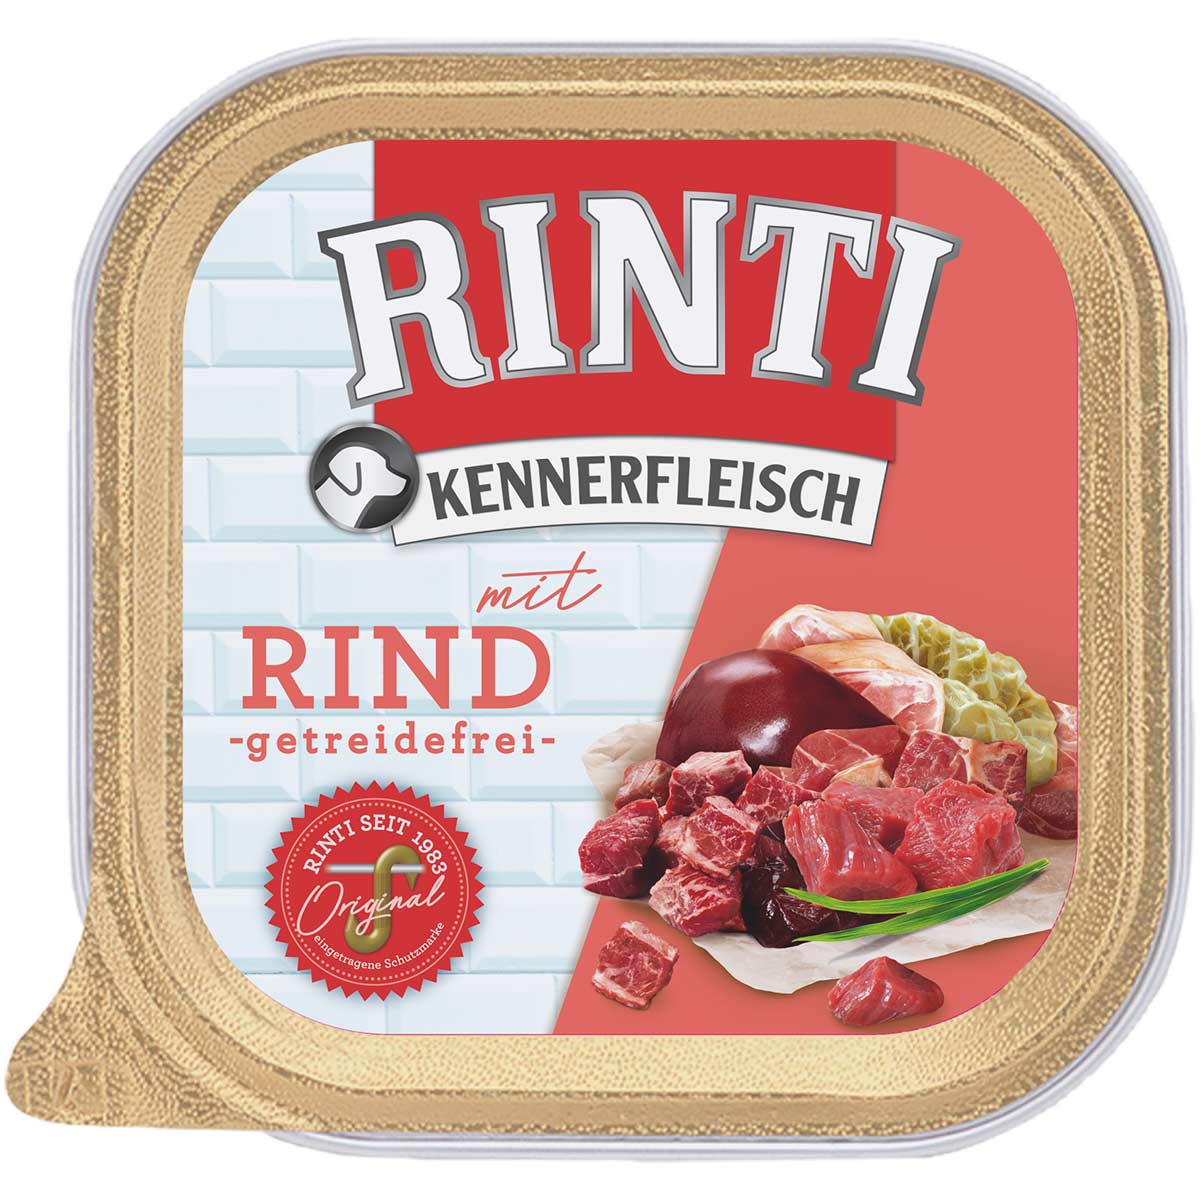 Rinti Kennerfleisch mit Rind 9x300g von Rinti